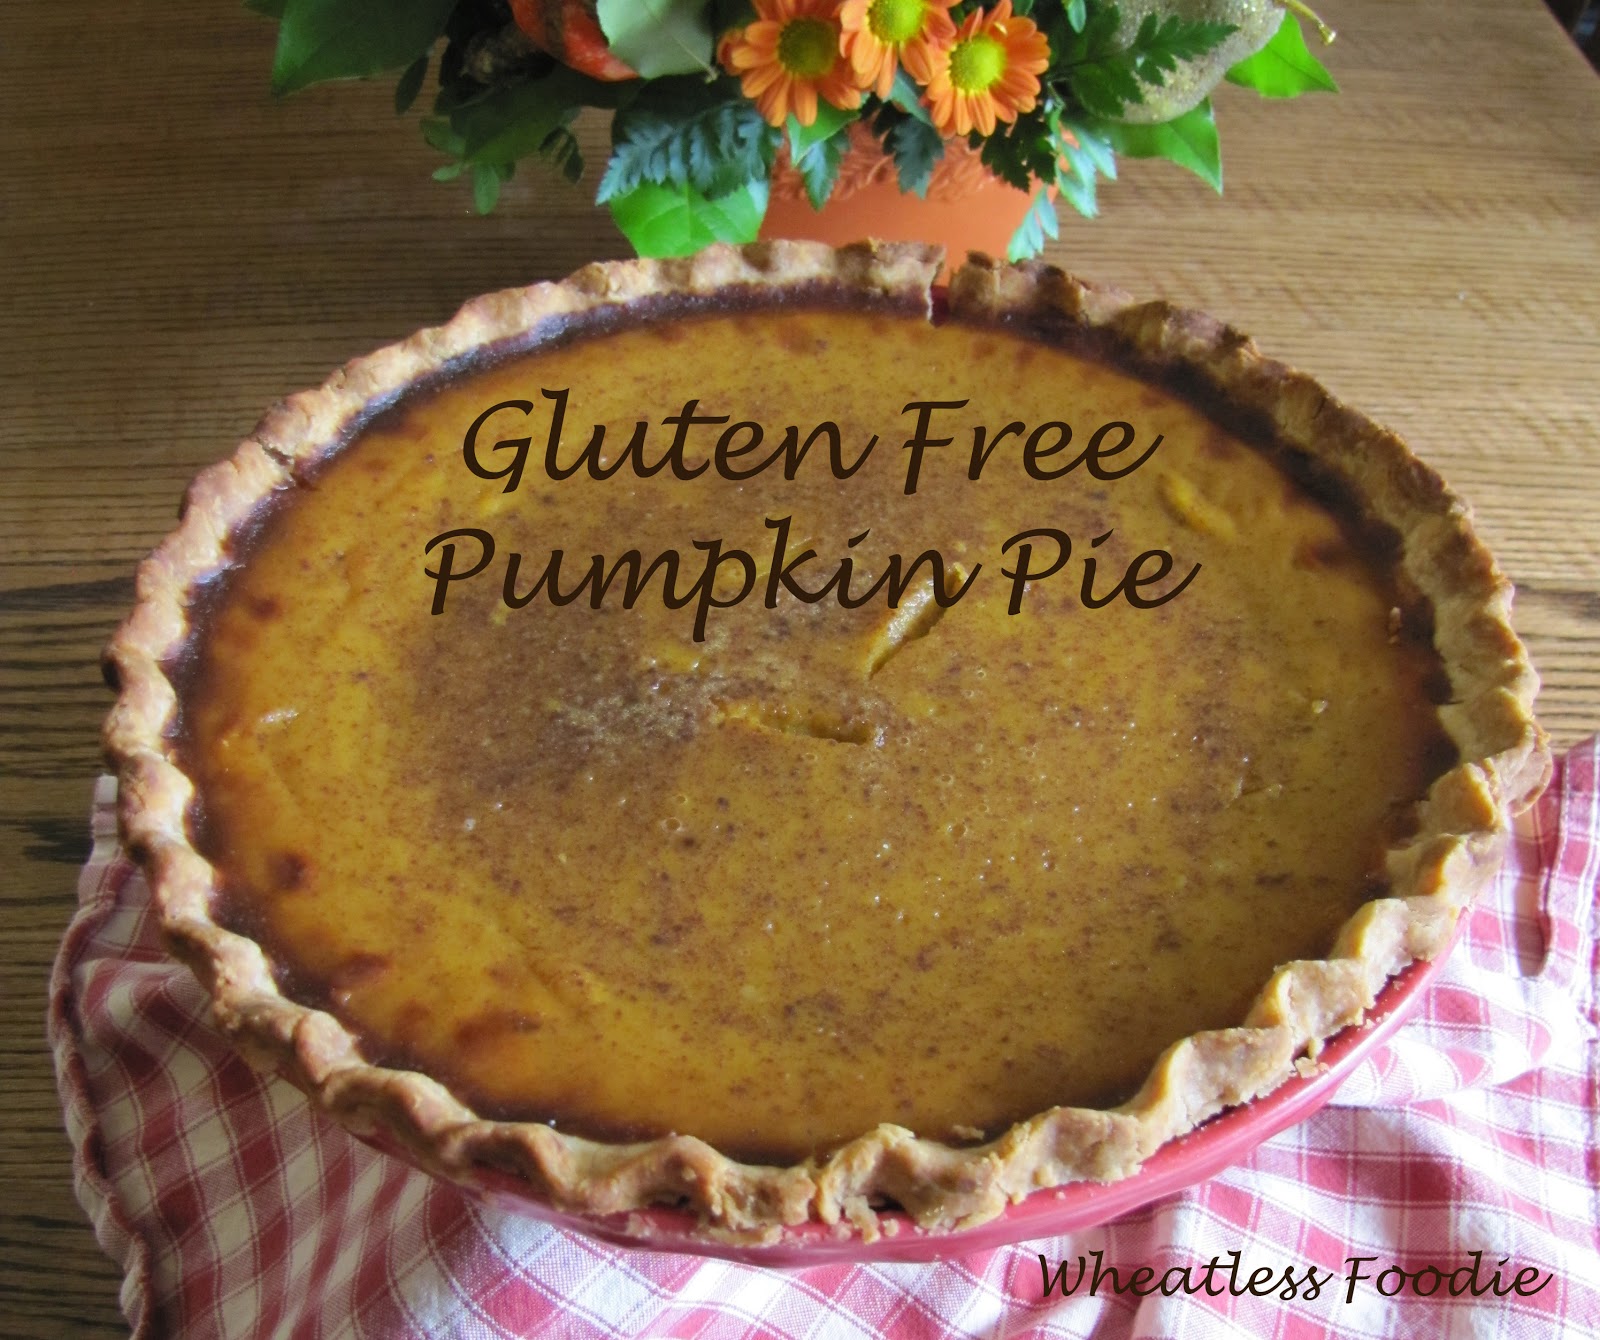 Wheatless Foodie: Gluten Free Pumpkin Pie